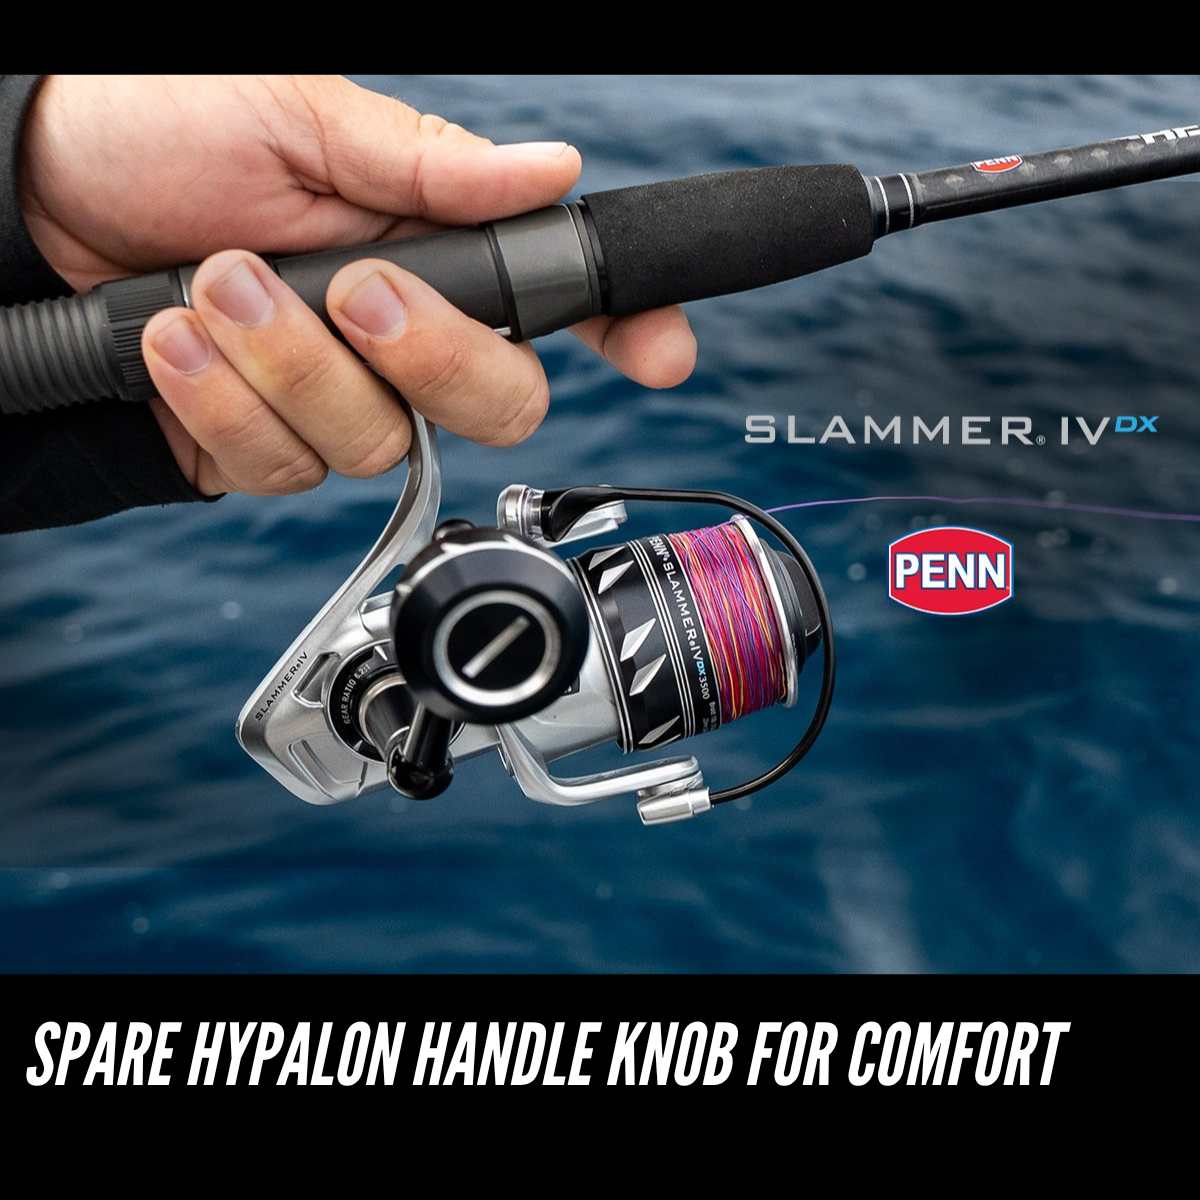 authentic Penn Slammer IV 3500 / Heavy Duty Spinning Fishing Reel